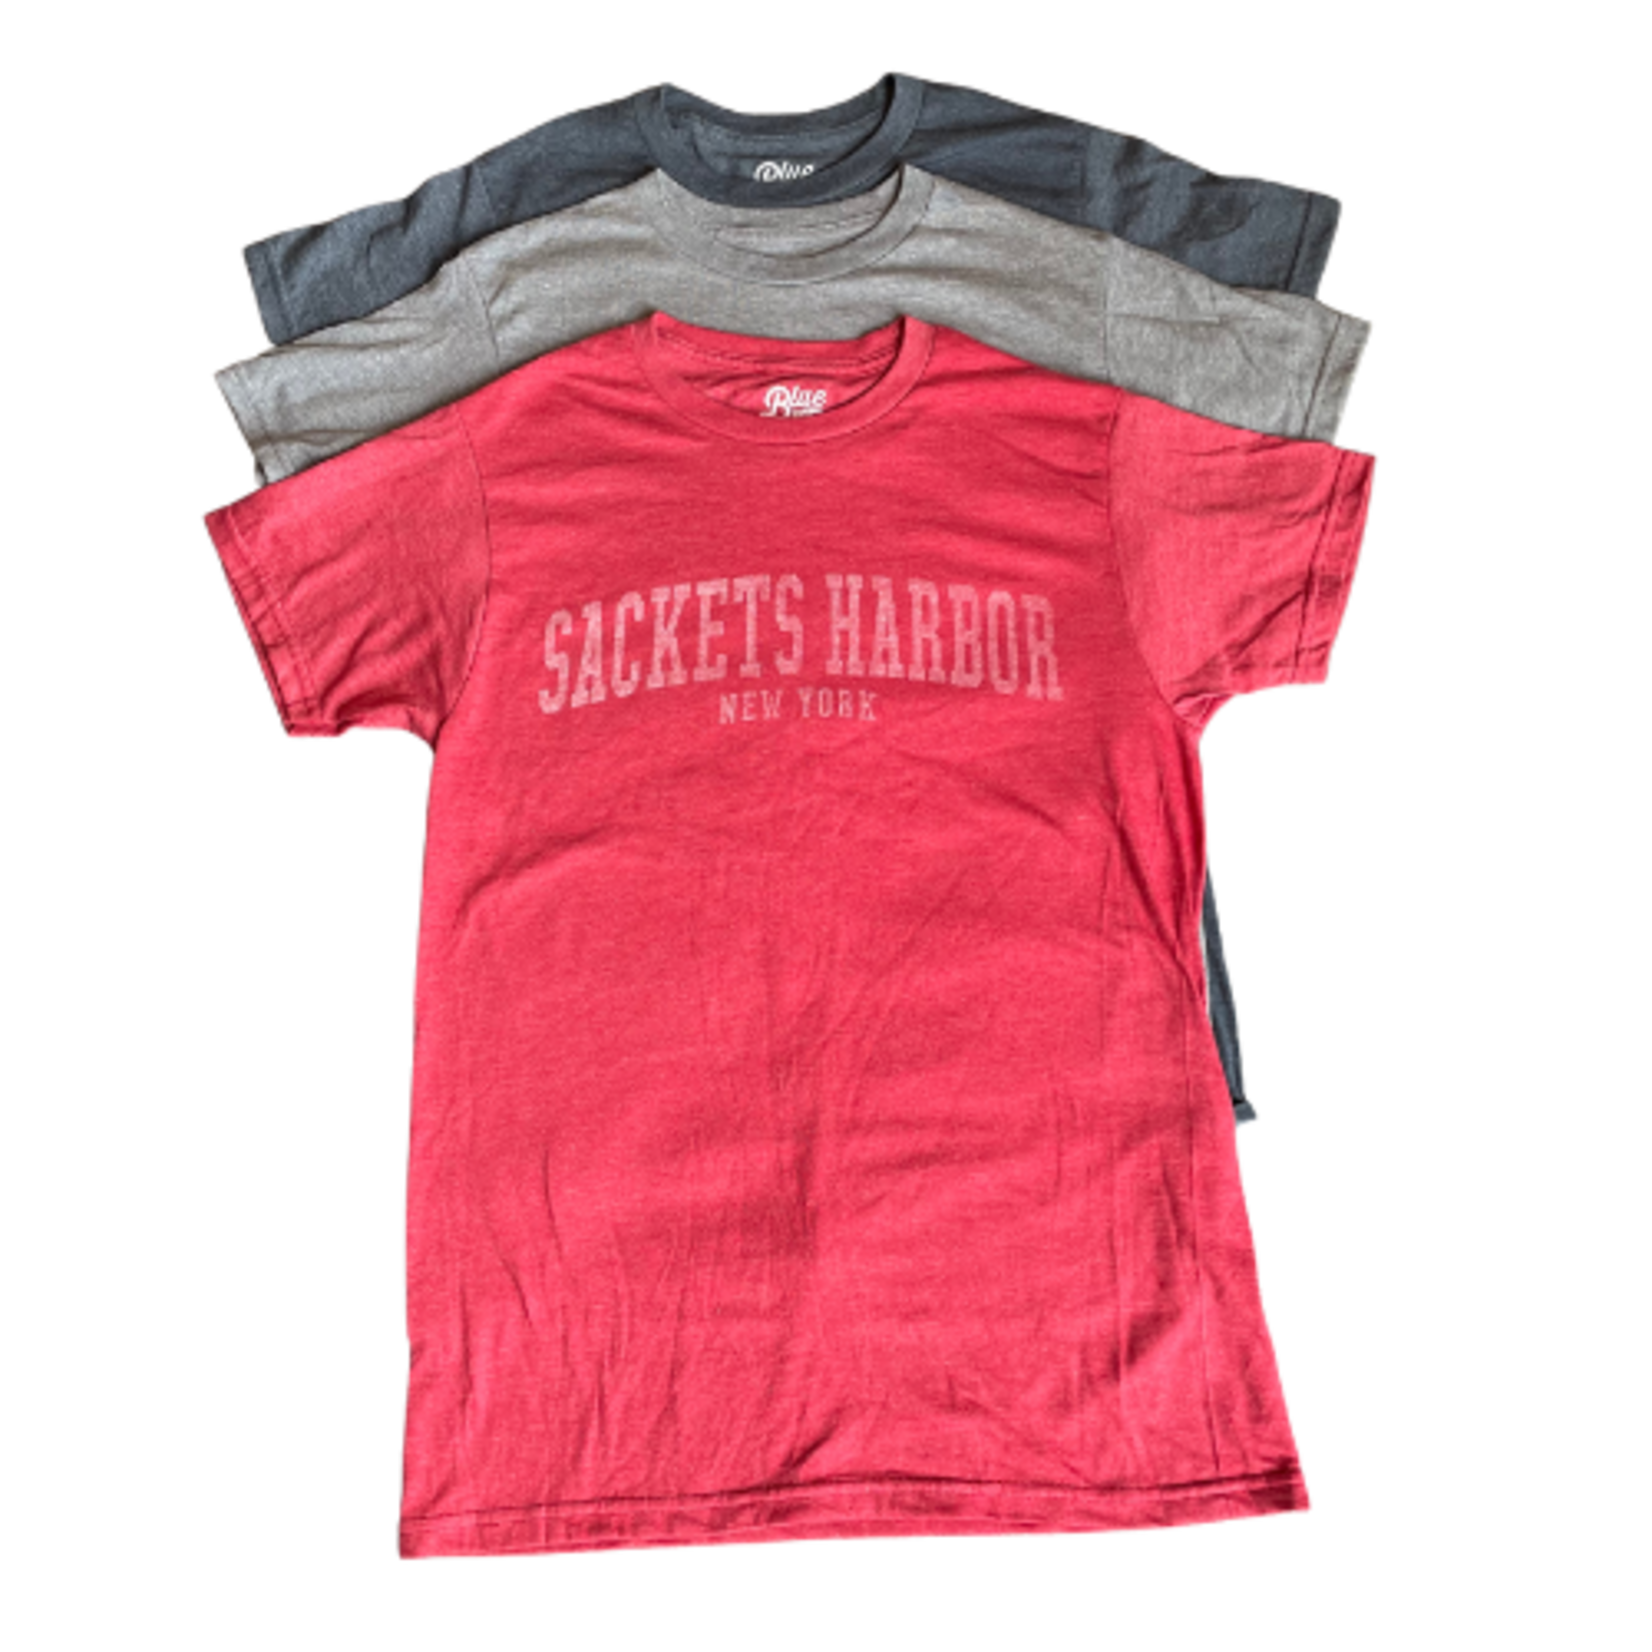 Market on Main Sackets Harbor Short Sleeve T-Shirt